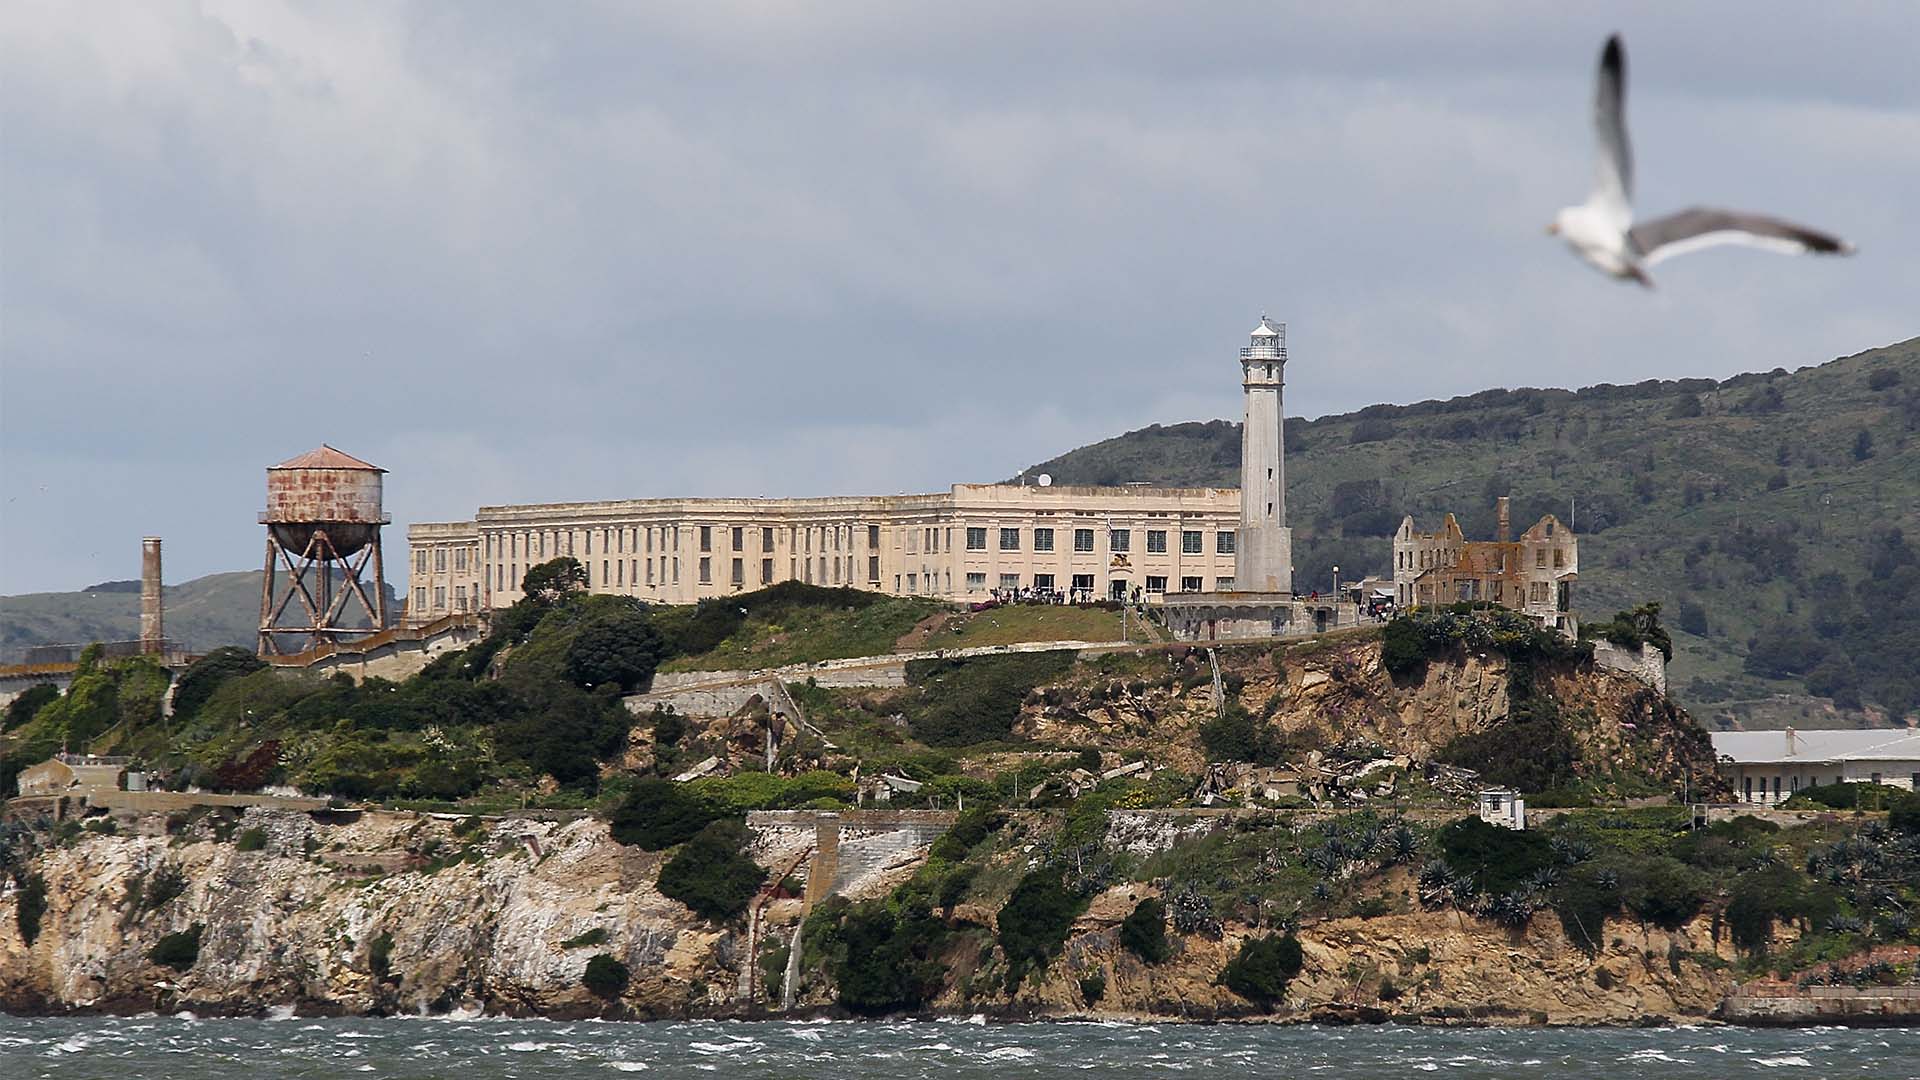 Alcatraz, where are you?